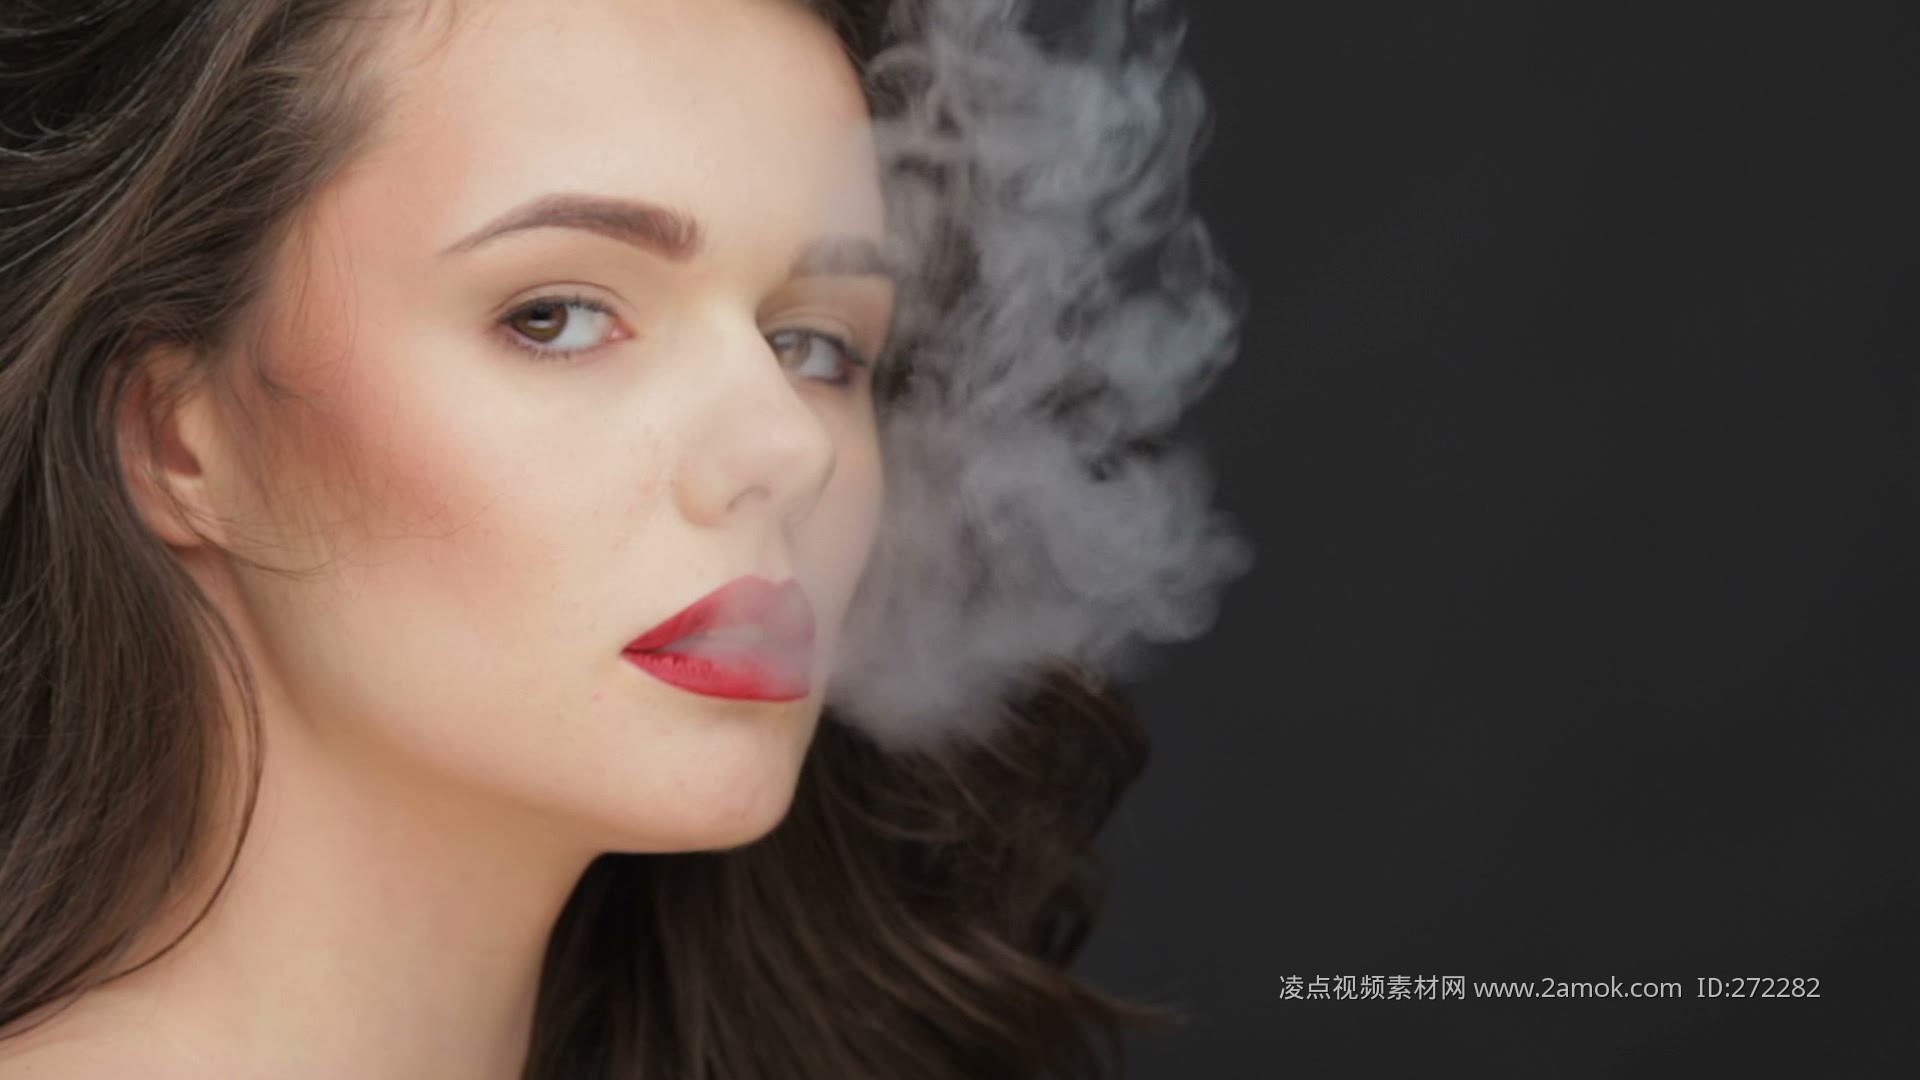 图片素材 : 抽烟, 女孩, 黑色, 白色, 美容, 手, 云, 闪光摄影 3856x5872 - Zayacman93 - 1603874 - 素材中国, 高清壁纸 - PxHere摄影图库